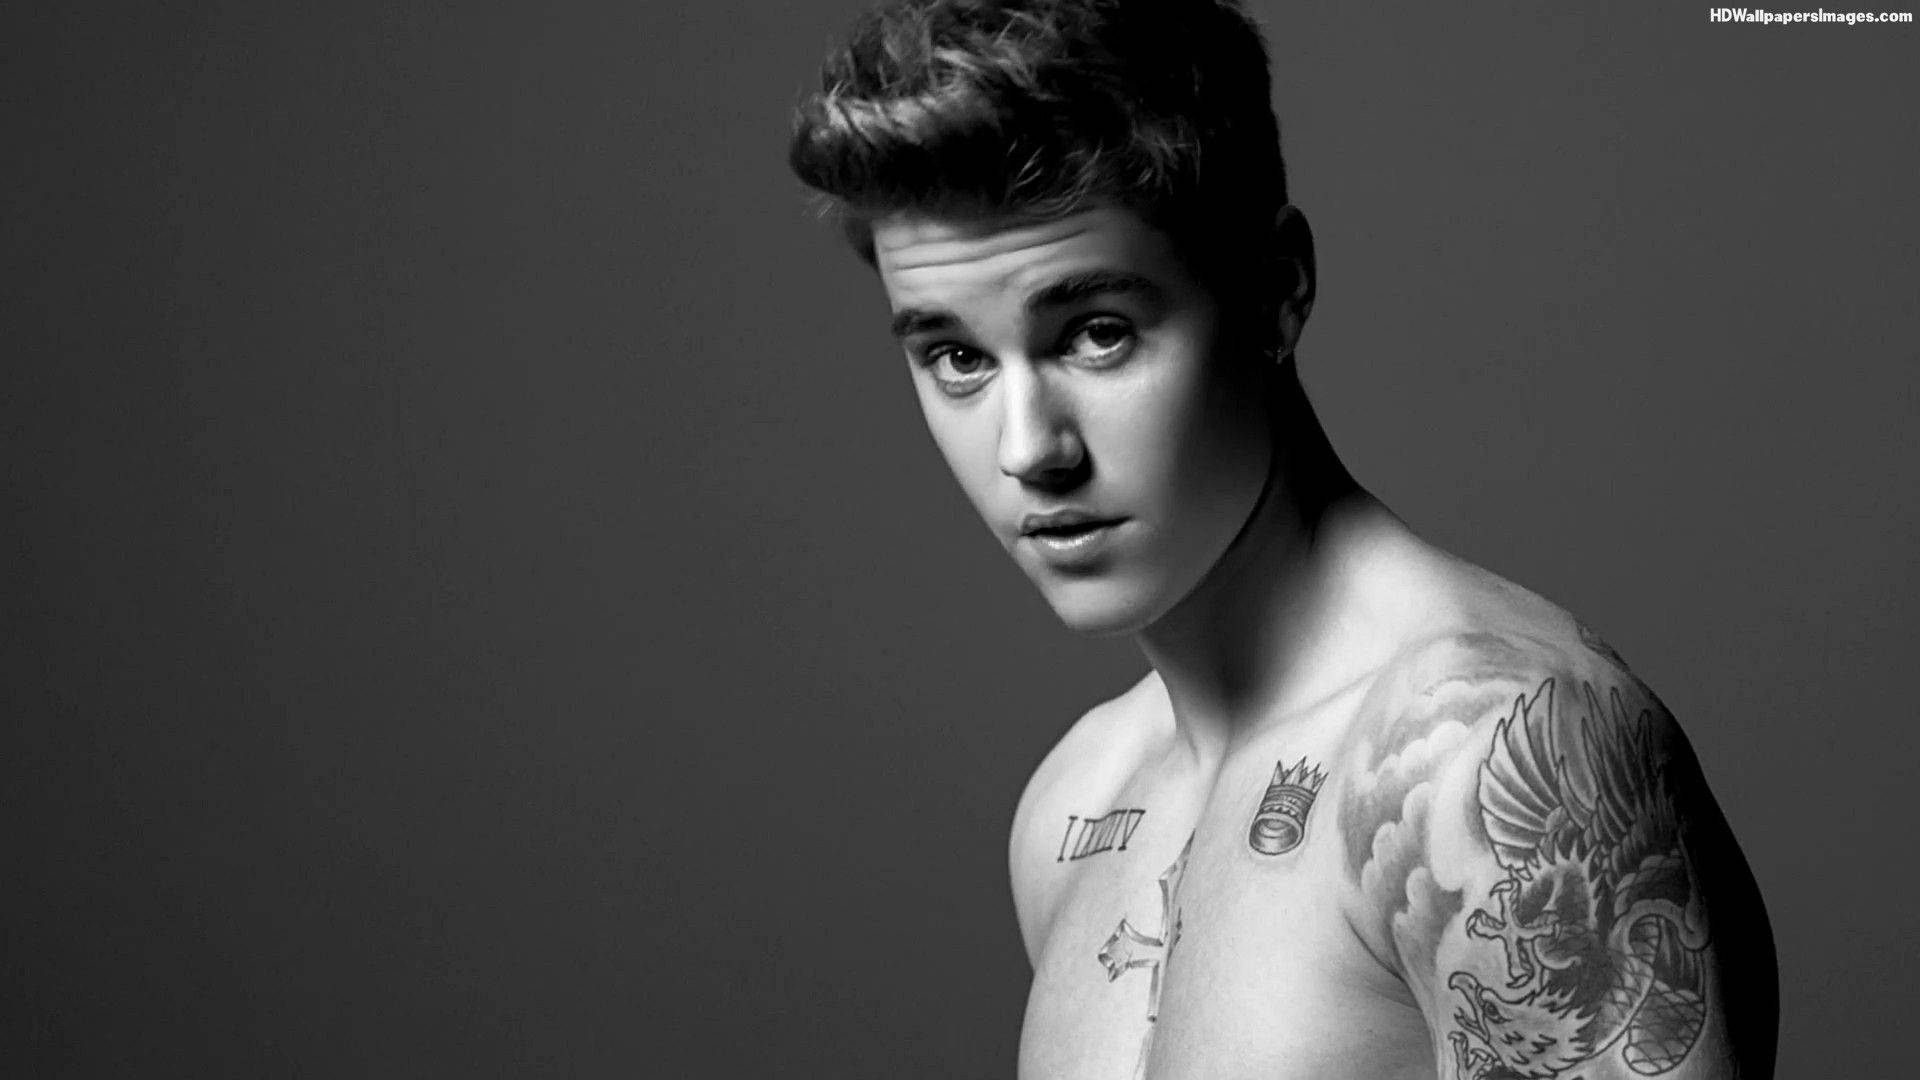 Canadian Pop Sensation Justin Bieber Background